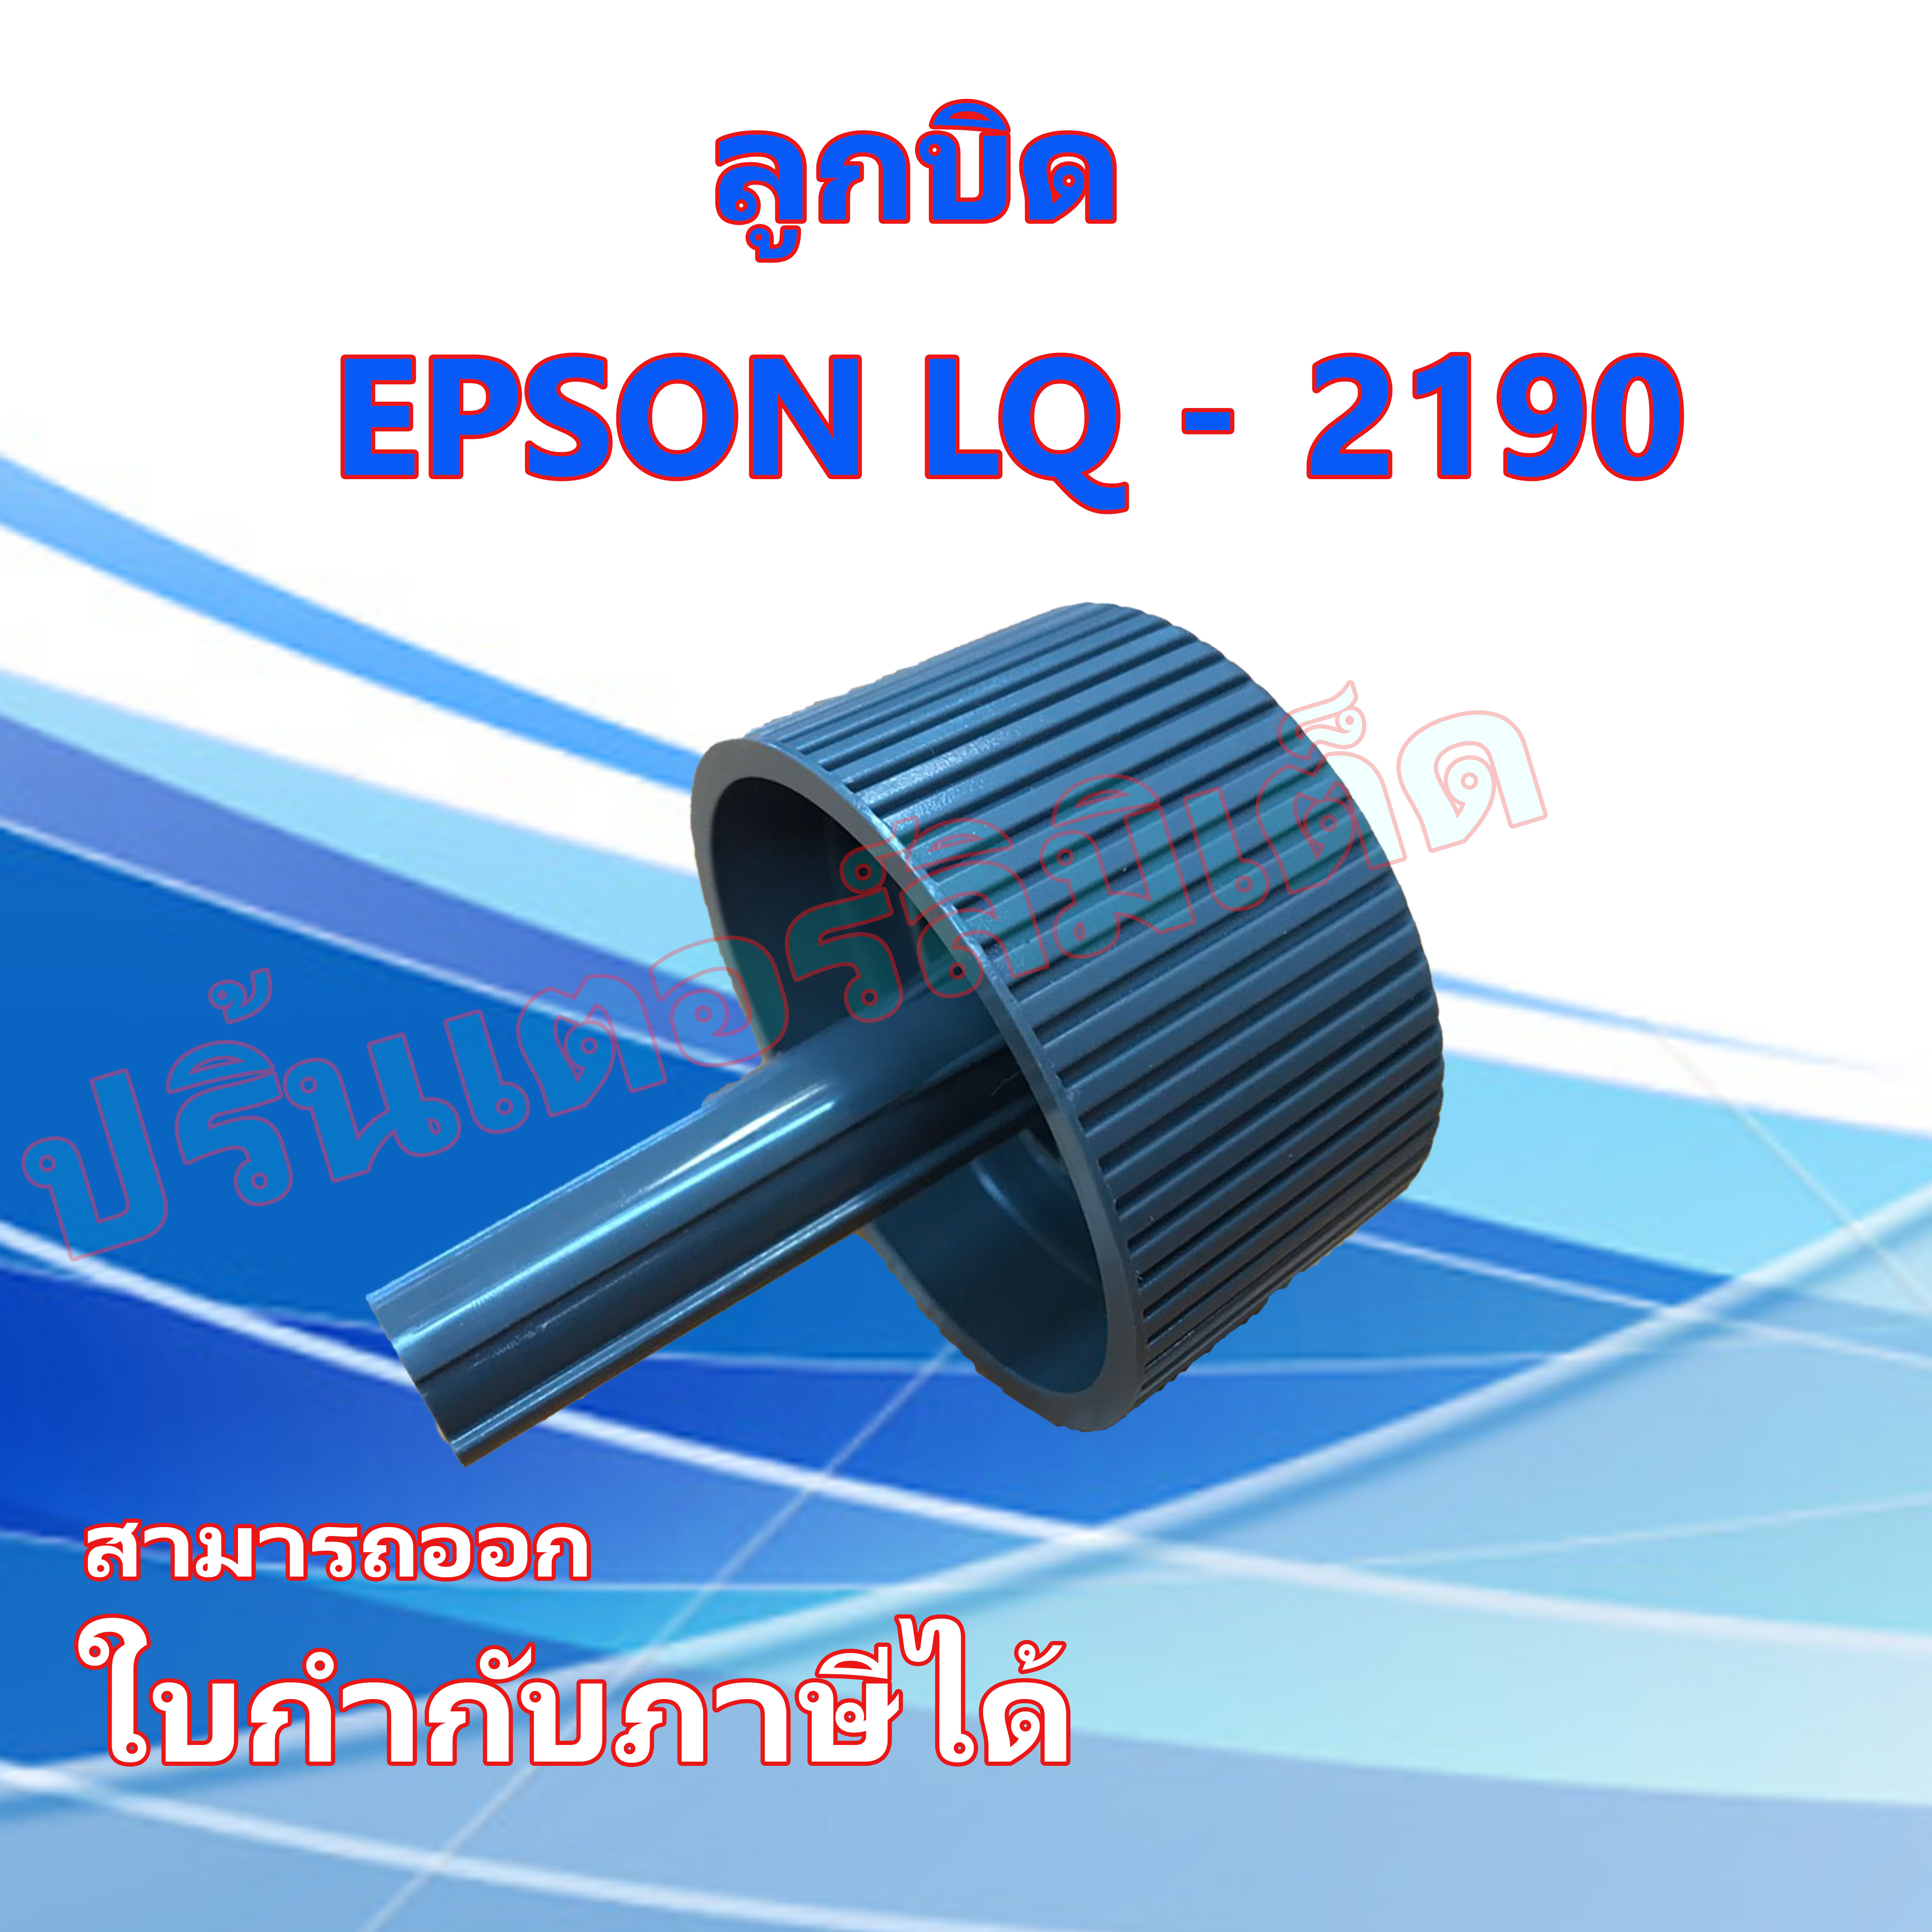 ลูกบิด EPSON LQ-2190